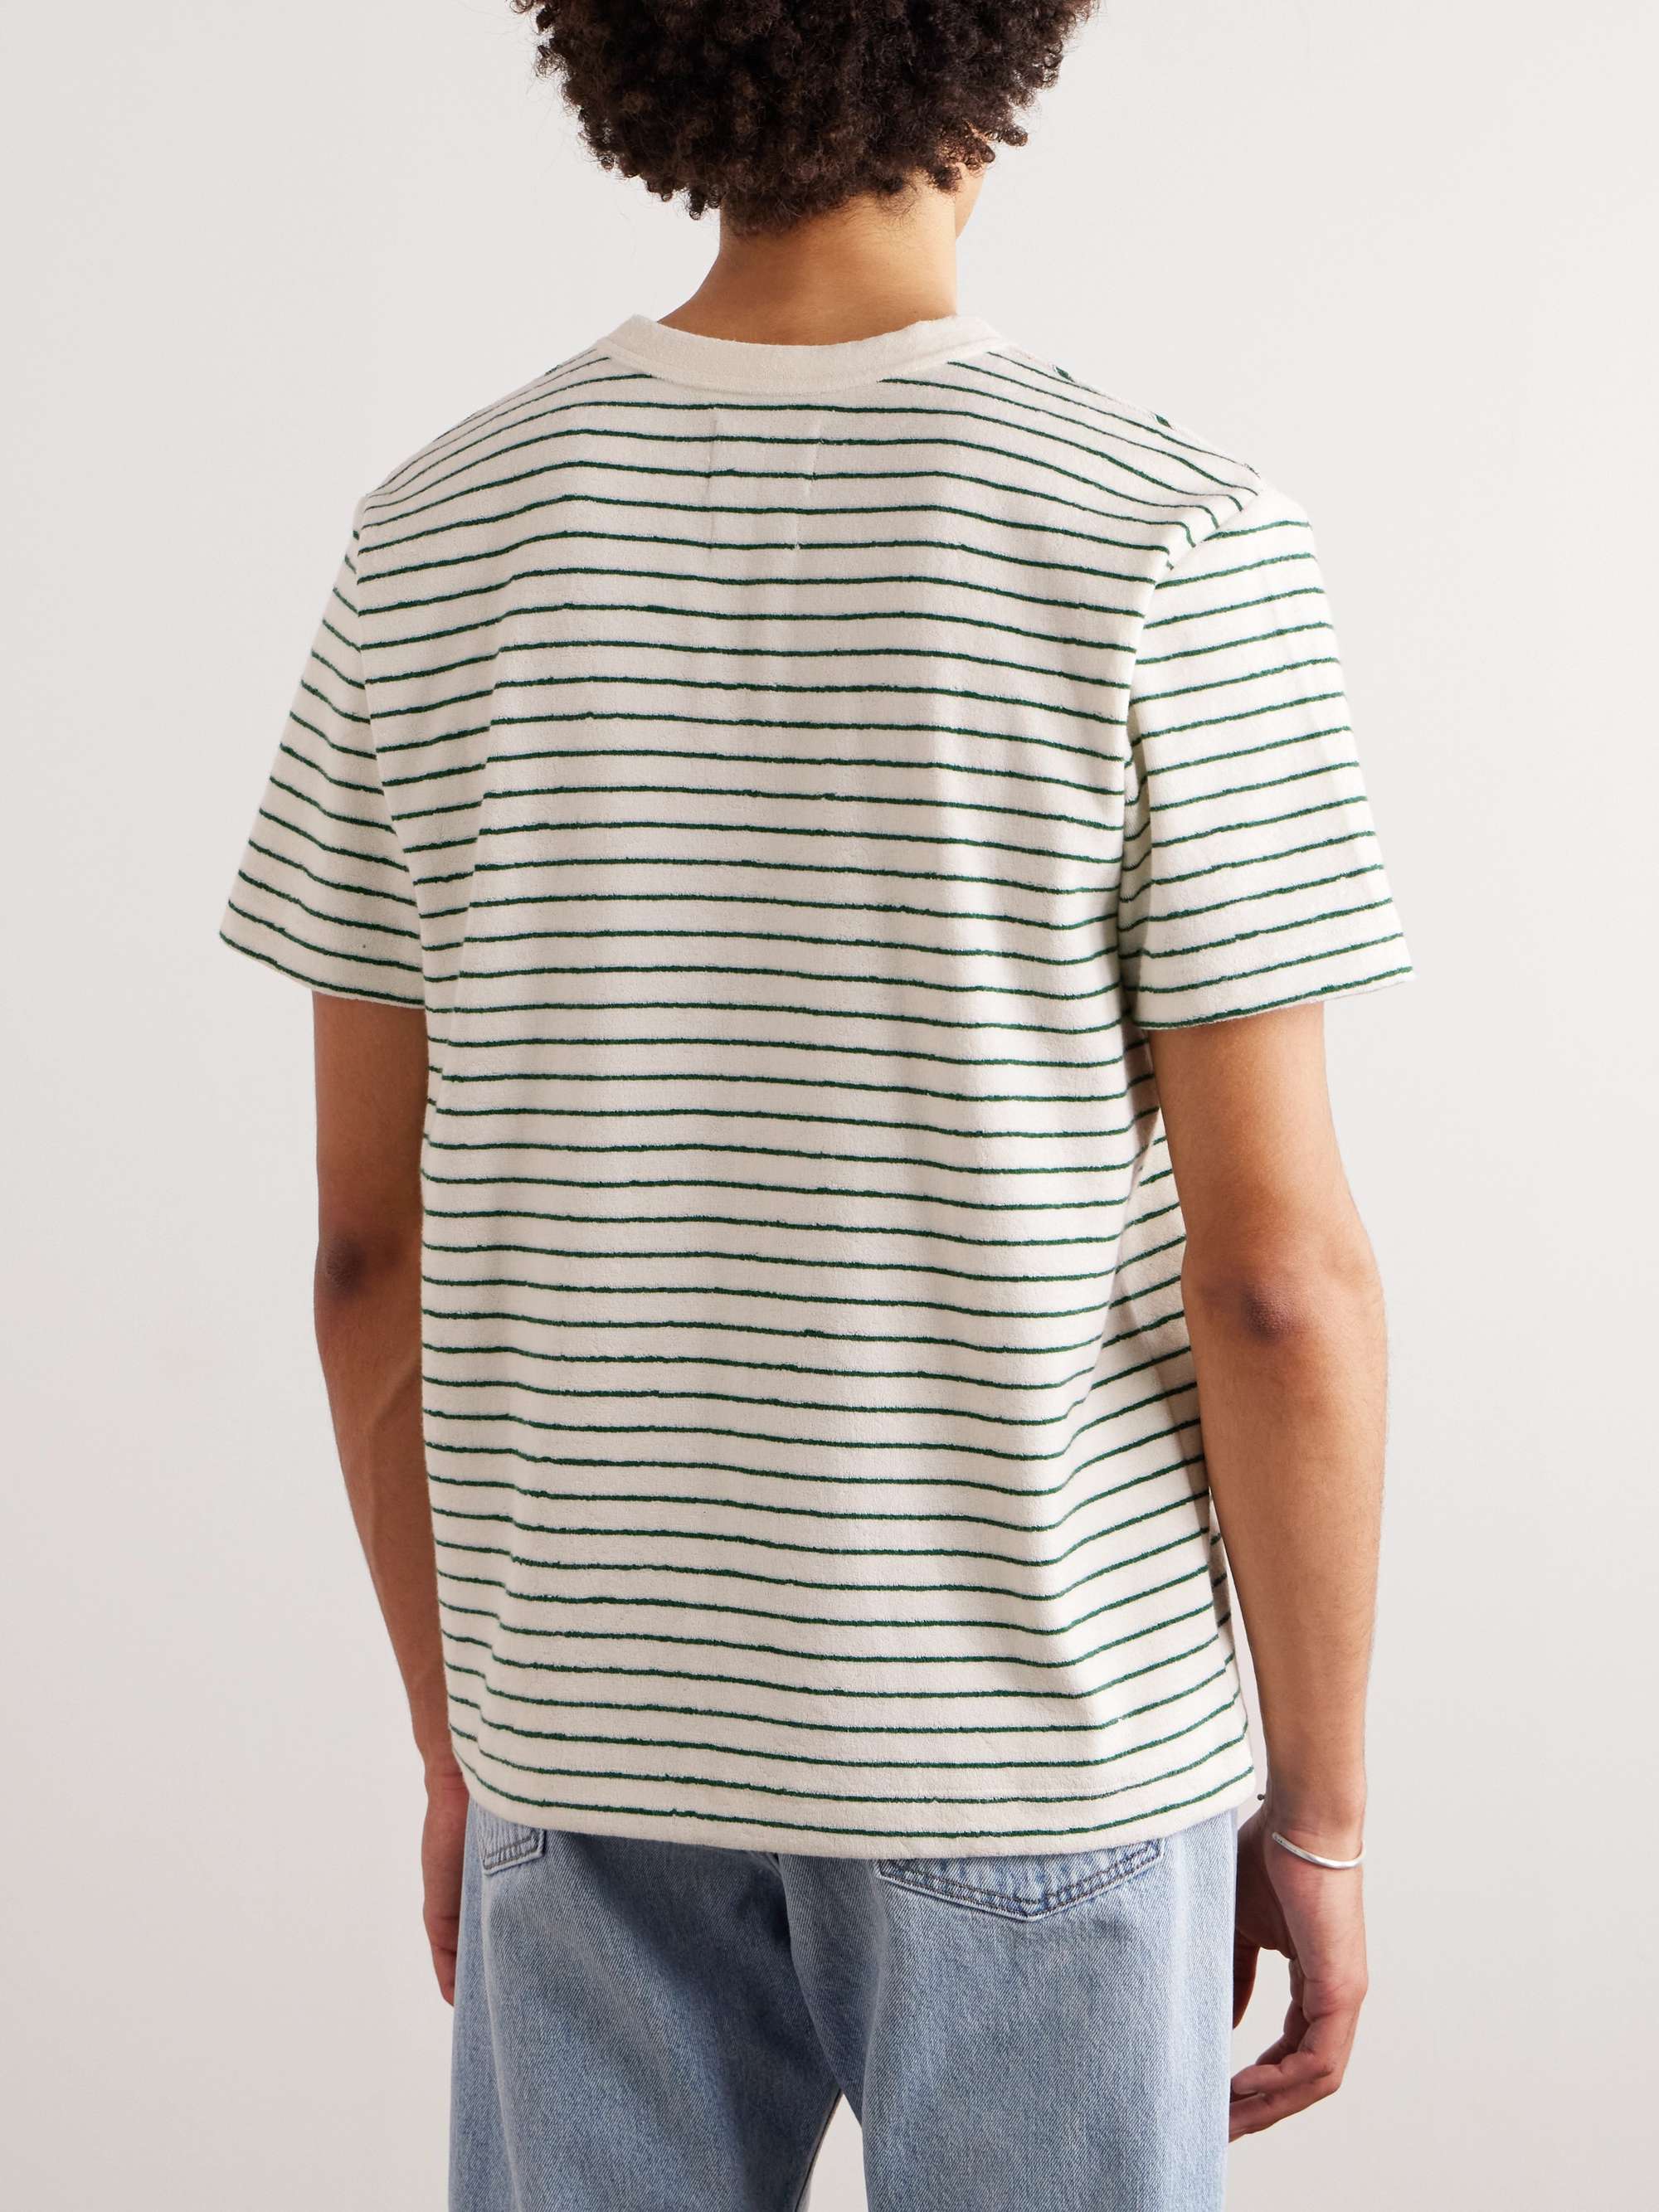 HOWLIN' Psycho Killer Striped Cotton-Blend Terry T-Shirt